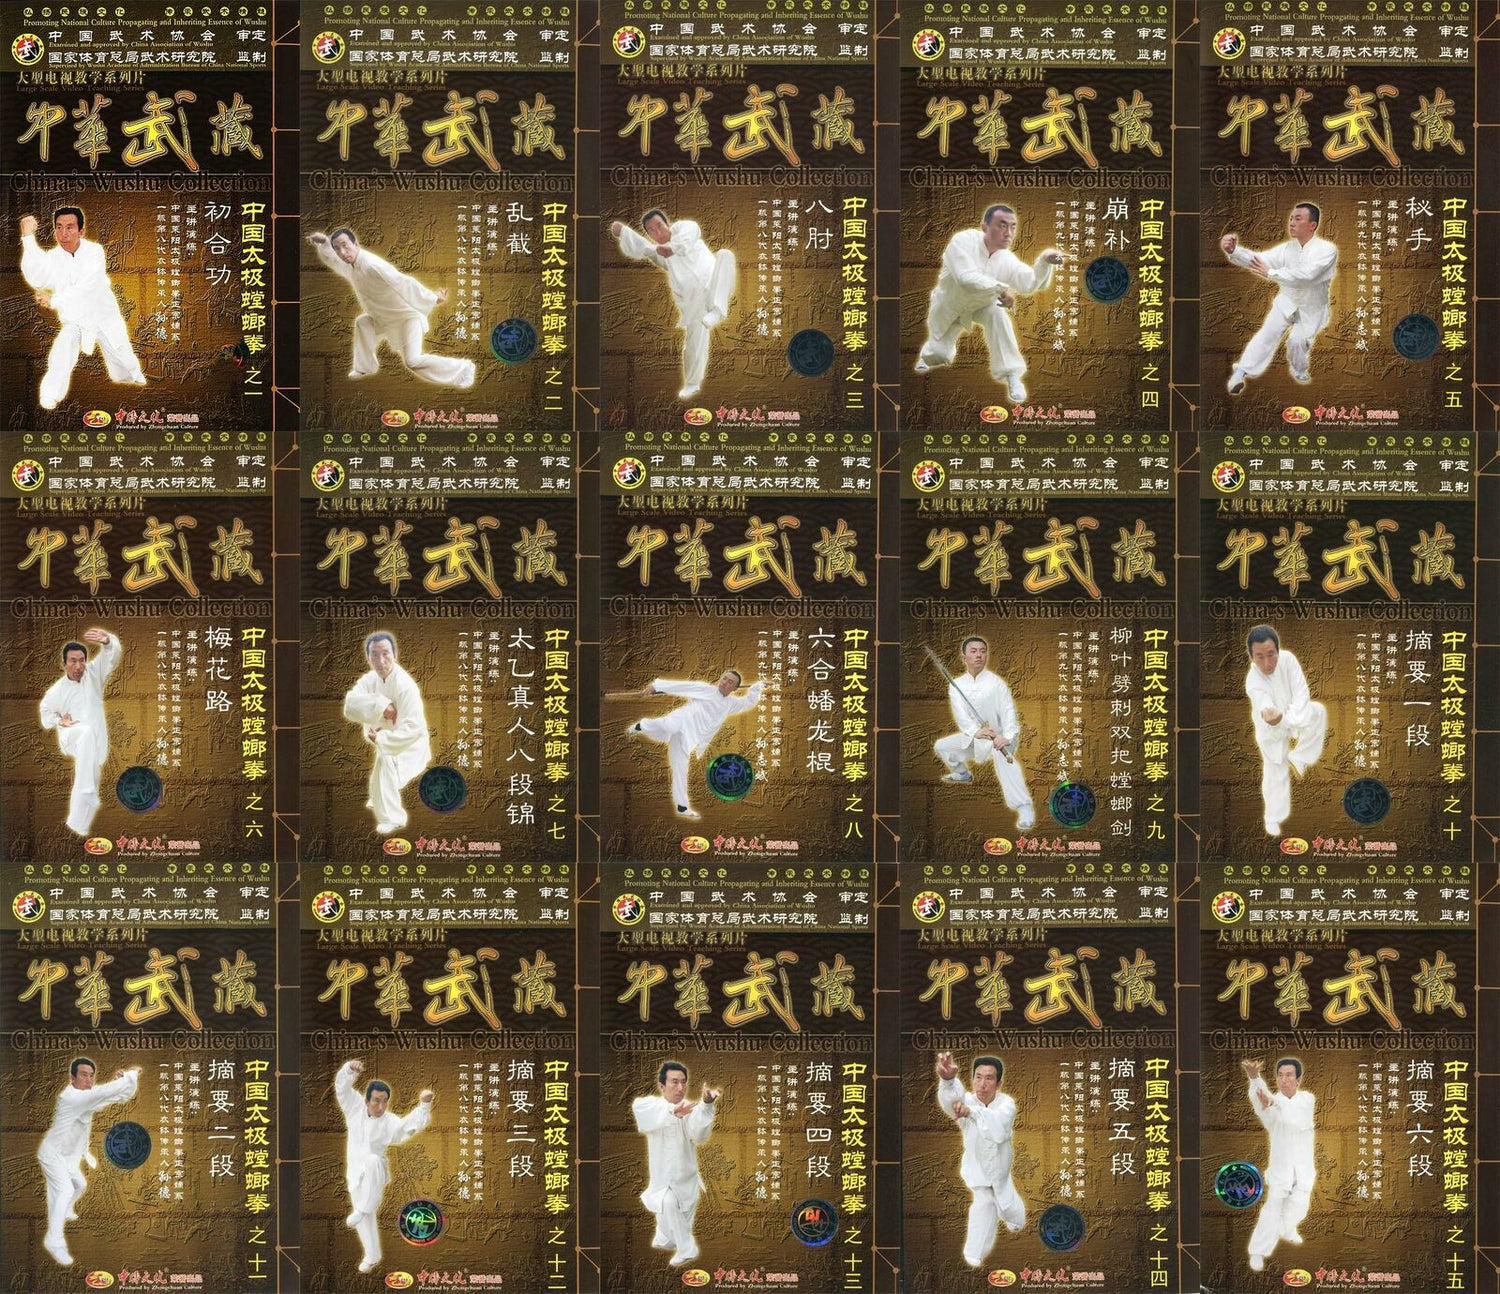 Chinese Traditional Wushu Taiji Mantis Boxing 23 DVD Set by Sun De & Sun Zhibin